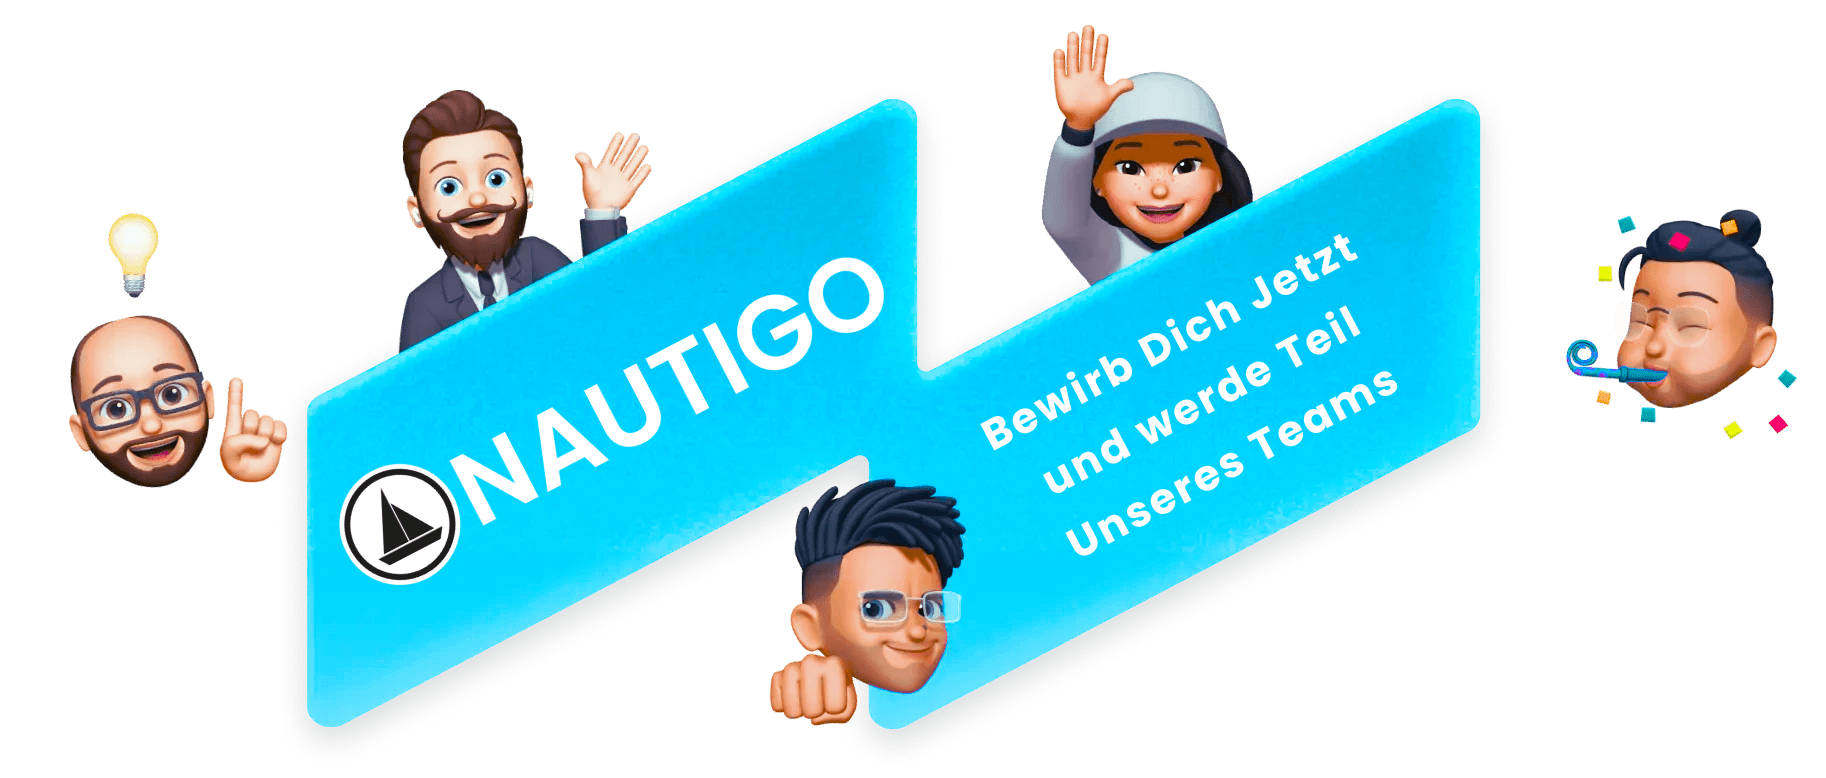 Nautigo Team Jobs